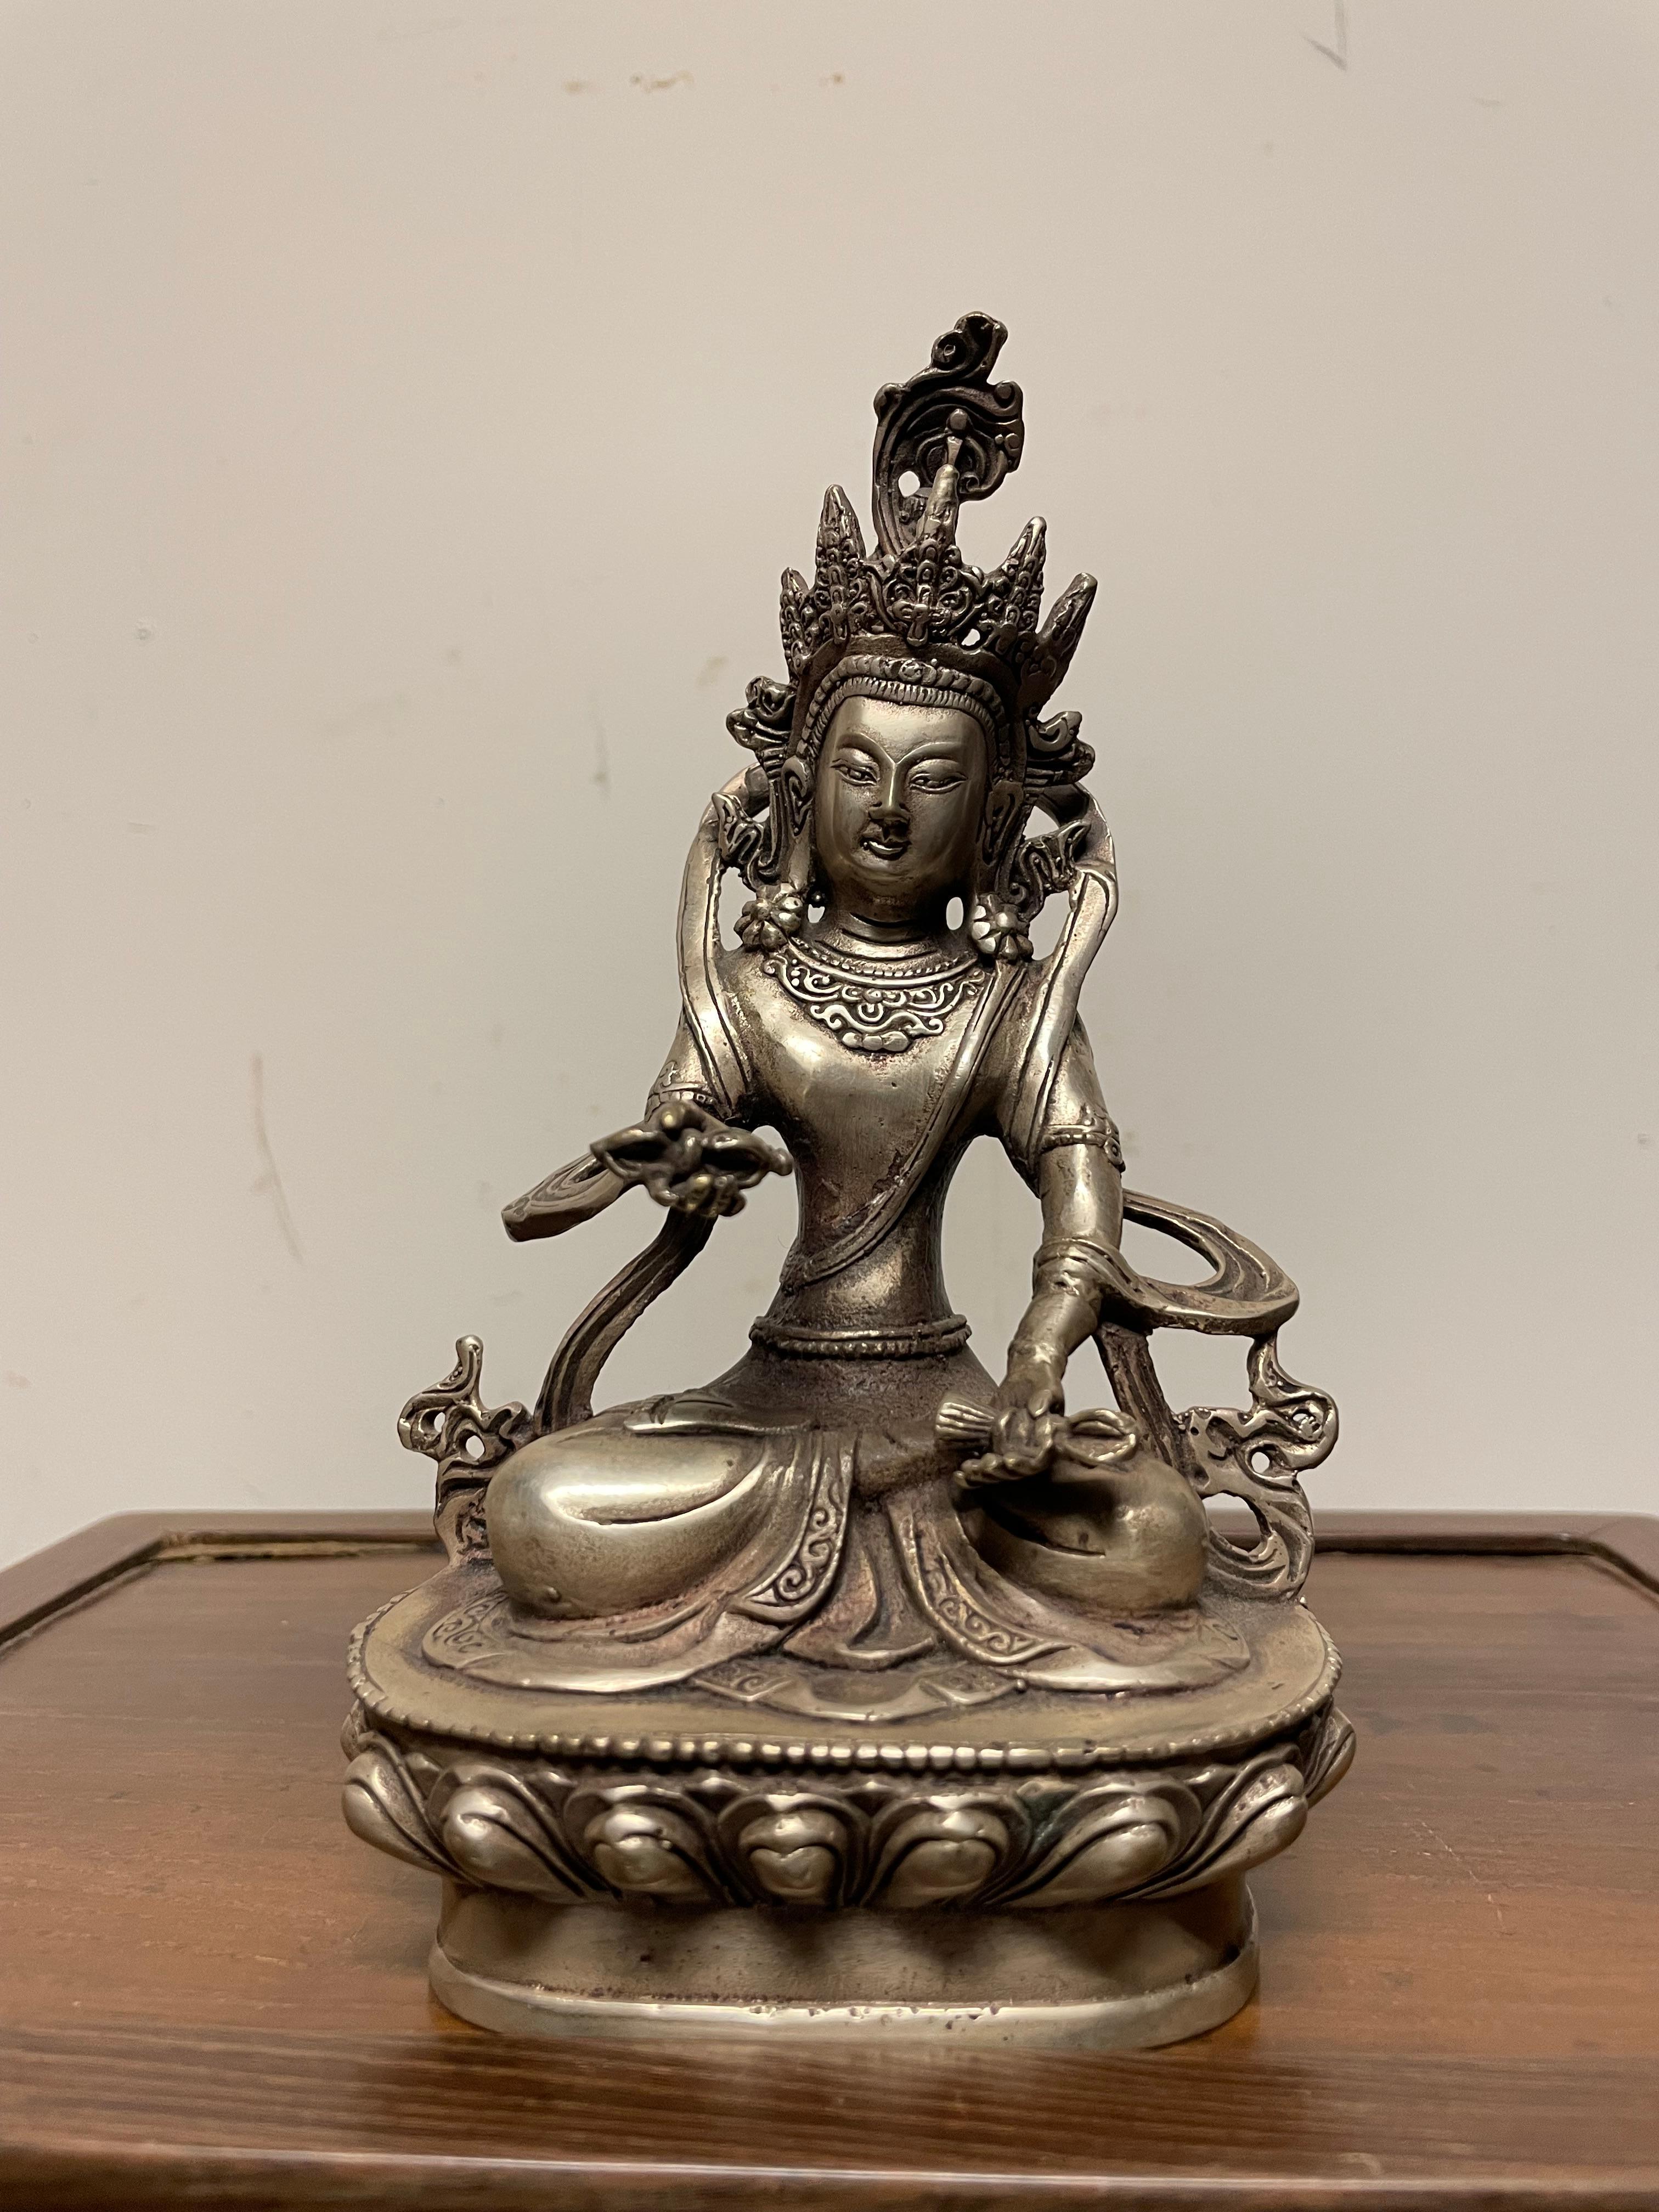 Wunderschöne kleine versilberte Bronze von Vajradhara. Indianer, um 1900. 
7 Zoll hoch x 4 breit x 3 tief

Die tibetisch-buddhistische Gottheit Vajradhara sitzt in yogischer Meditation auf einem Lotos-Sockel. Seine Hände halten identifizierende